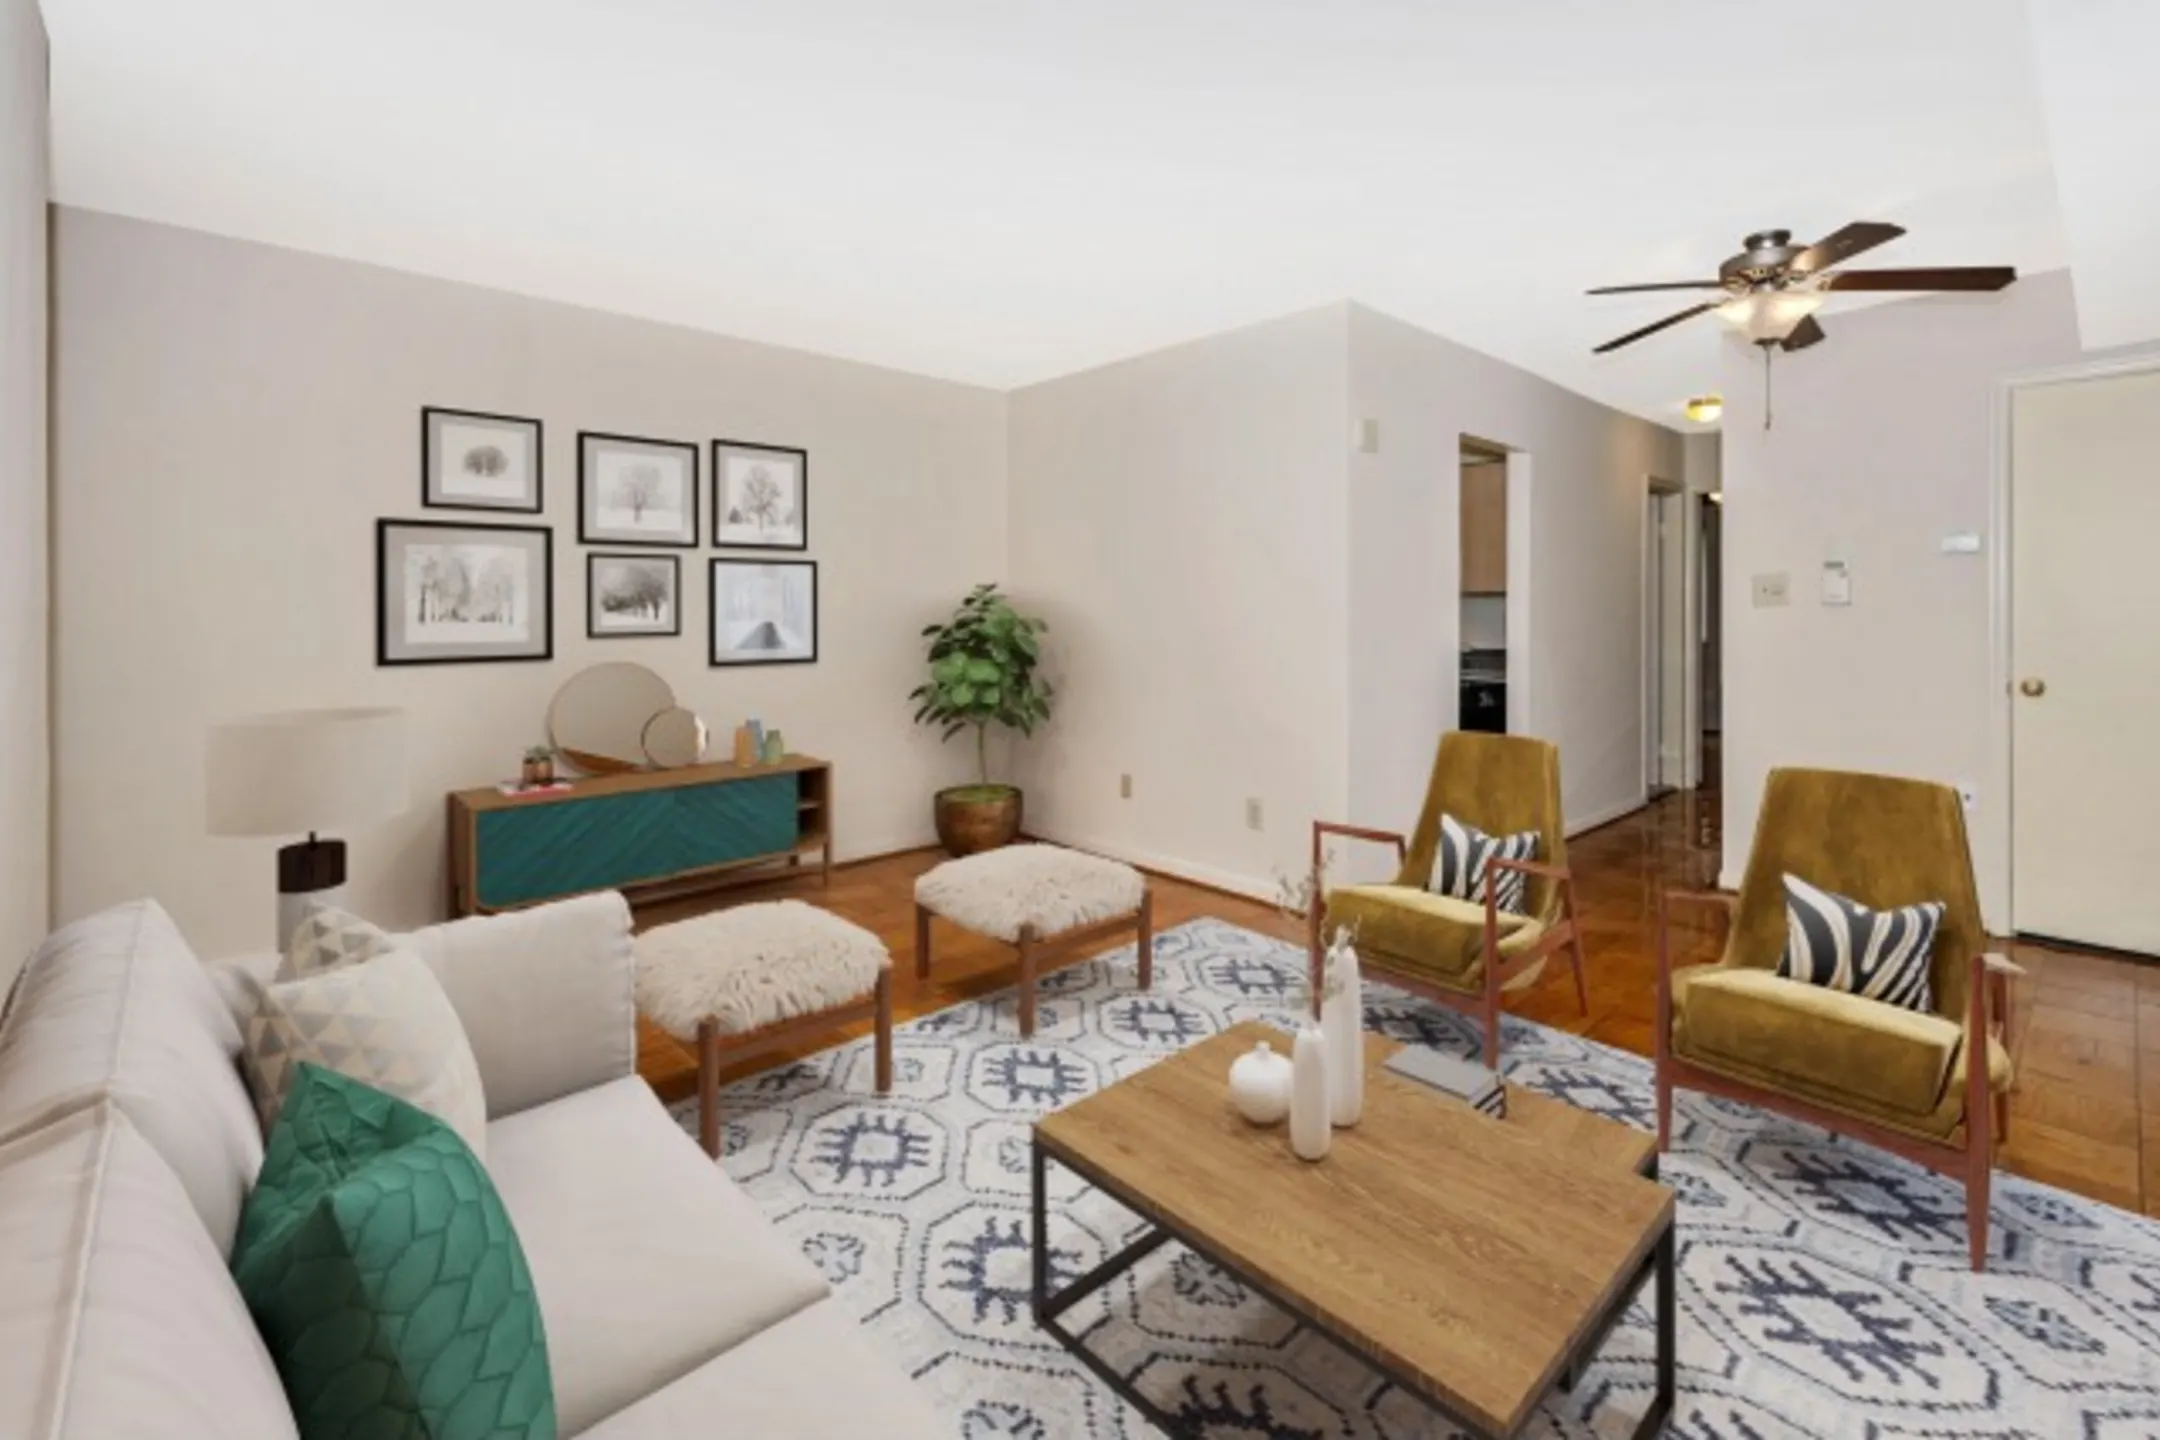 Living Room - Azalea Apartments - Takoma Park, MD